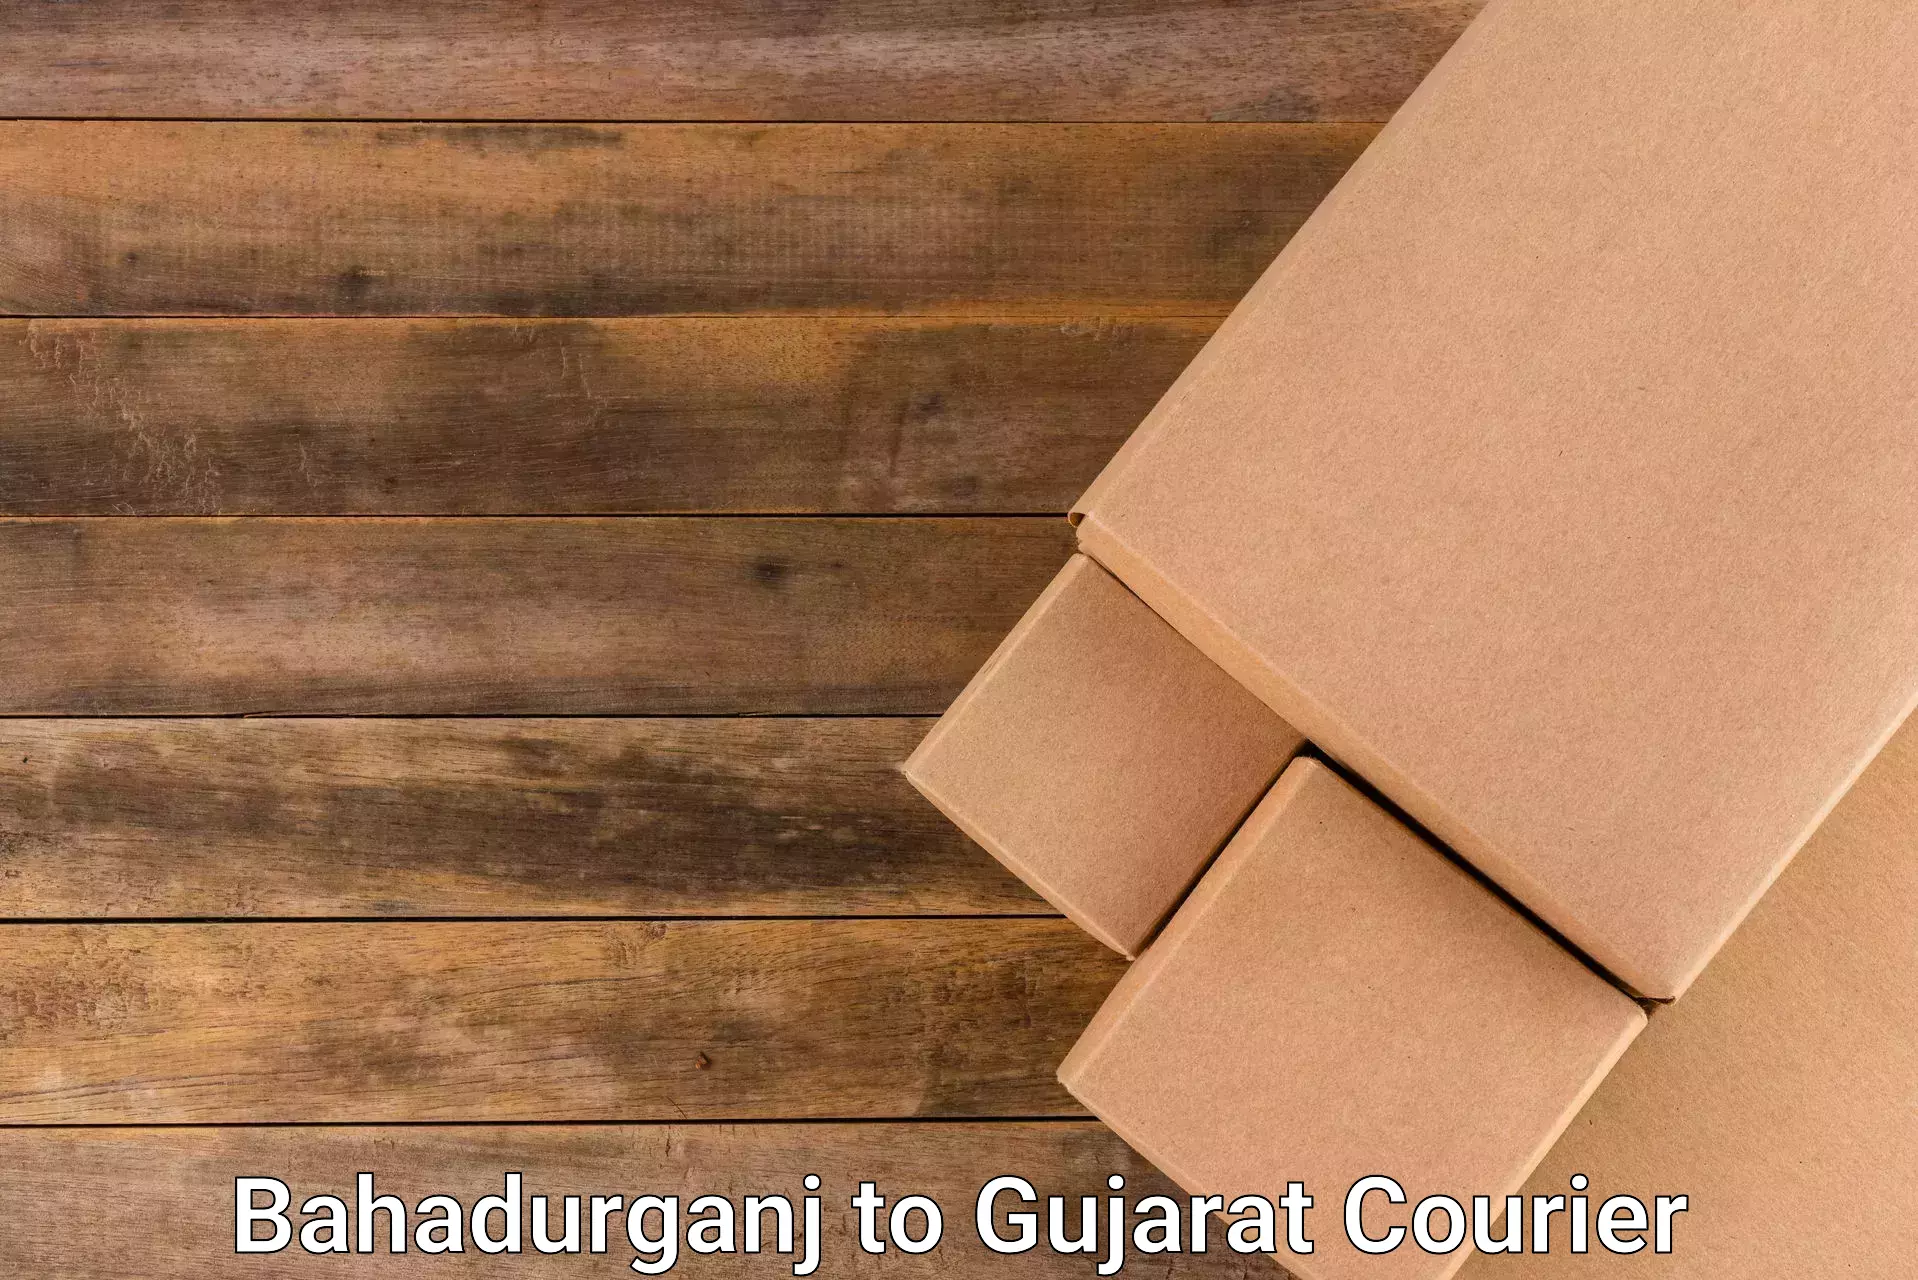 Reliable delivery network Bahadurganj to Dhoraji